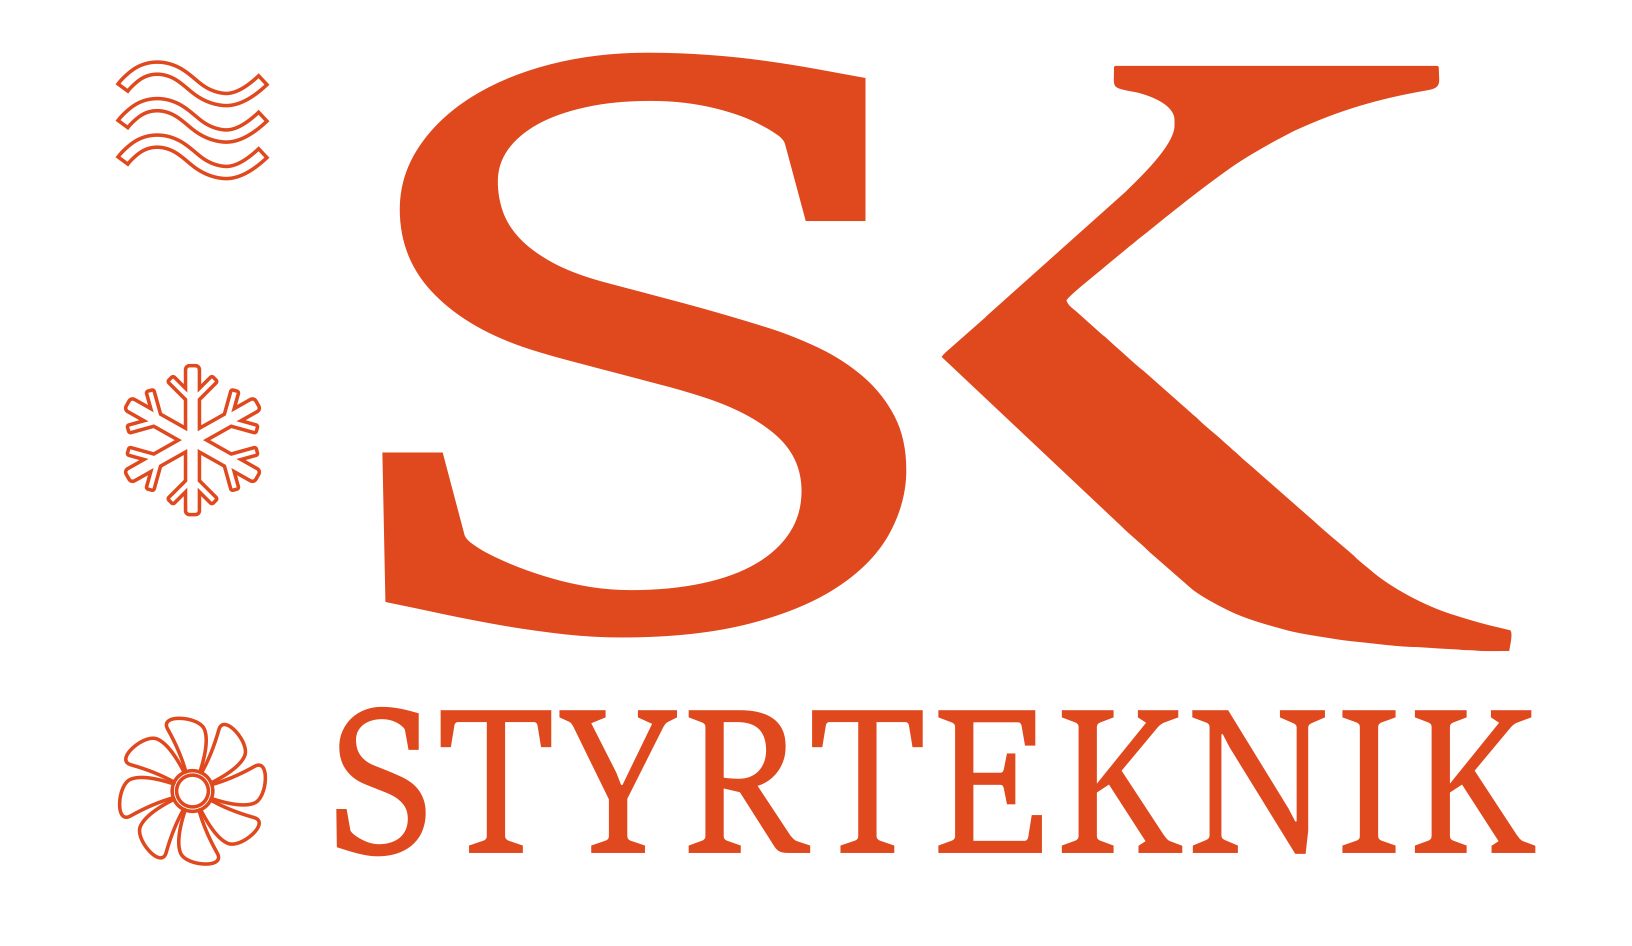 SK Styrteknik